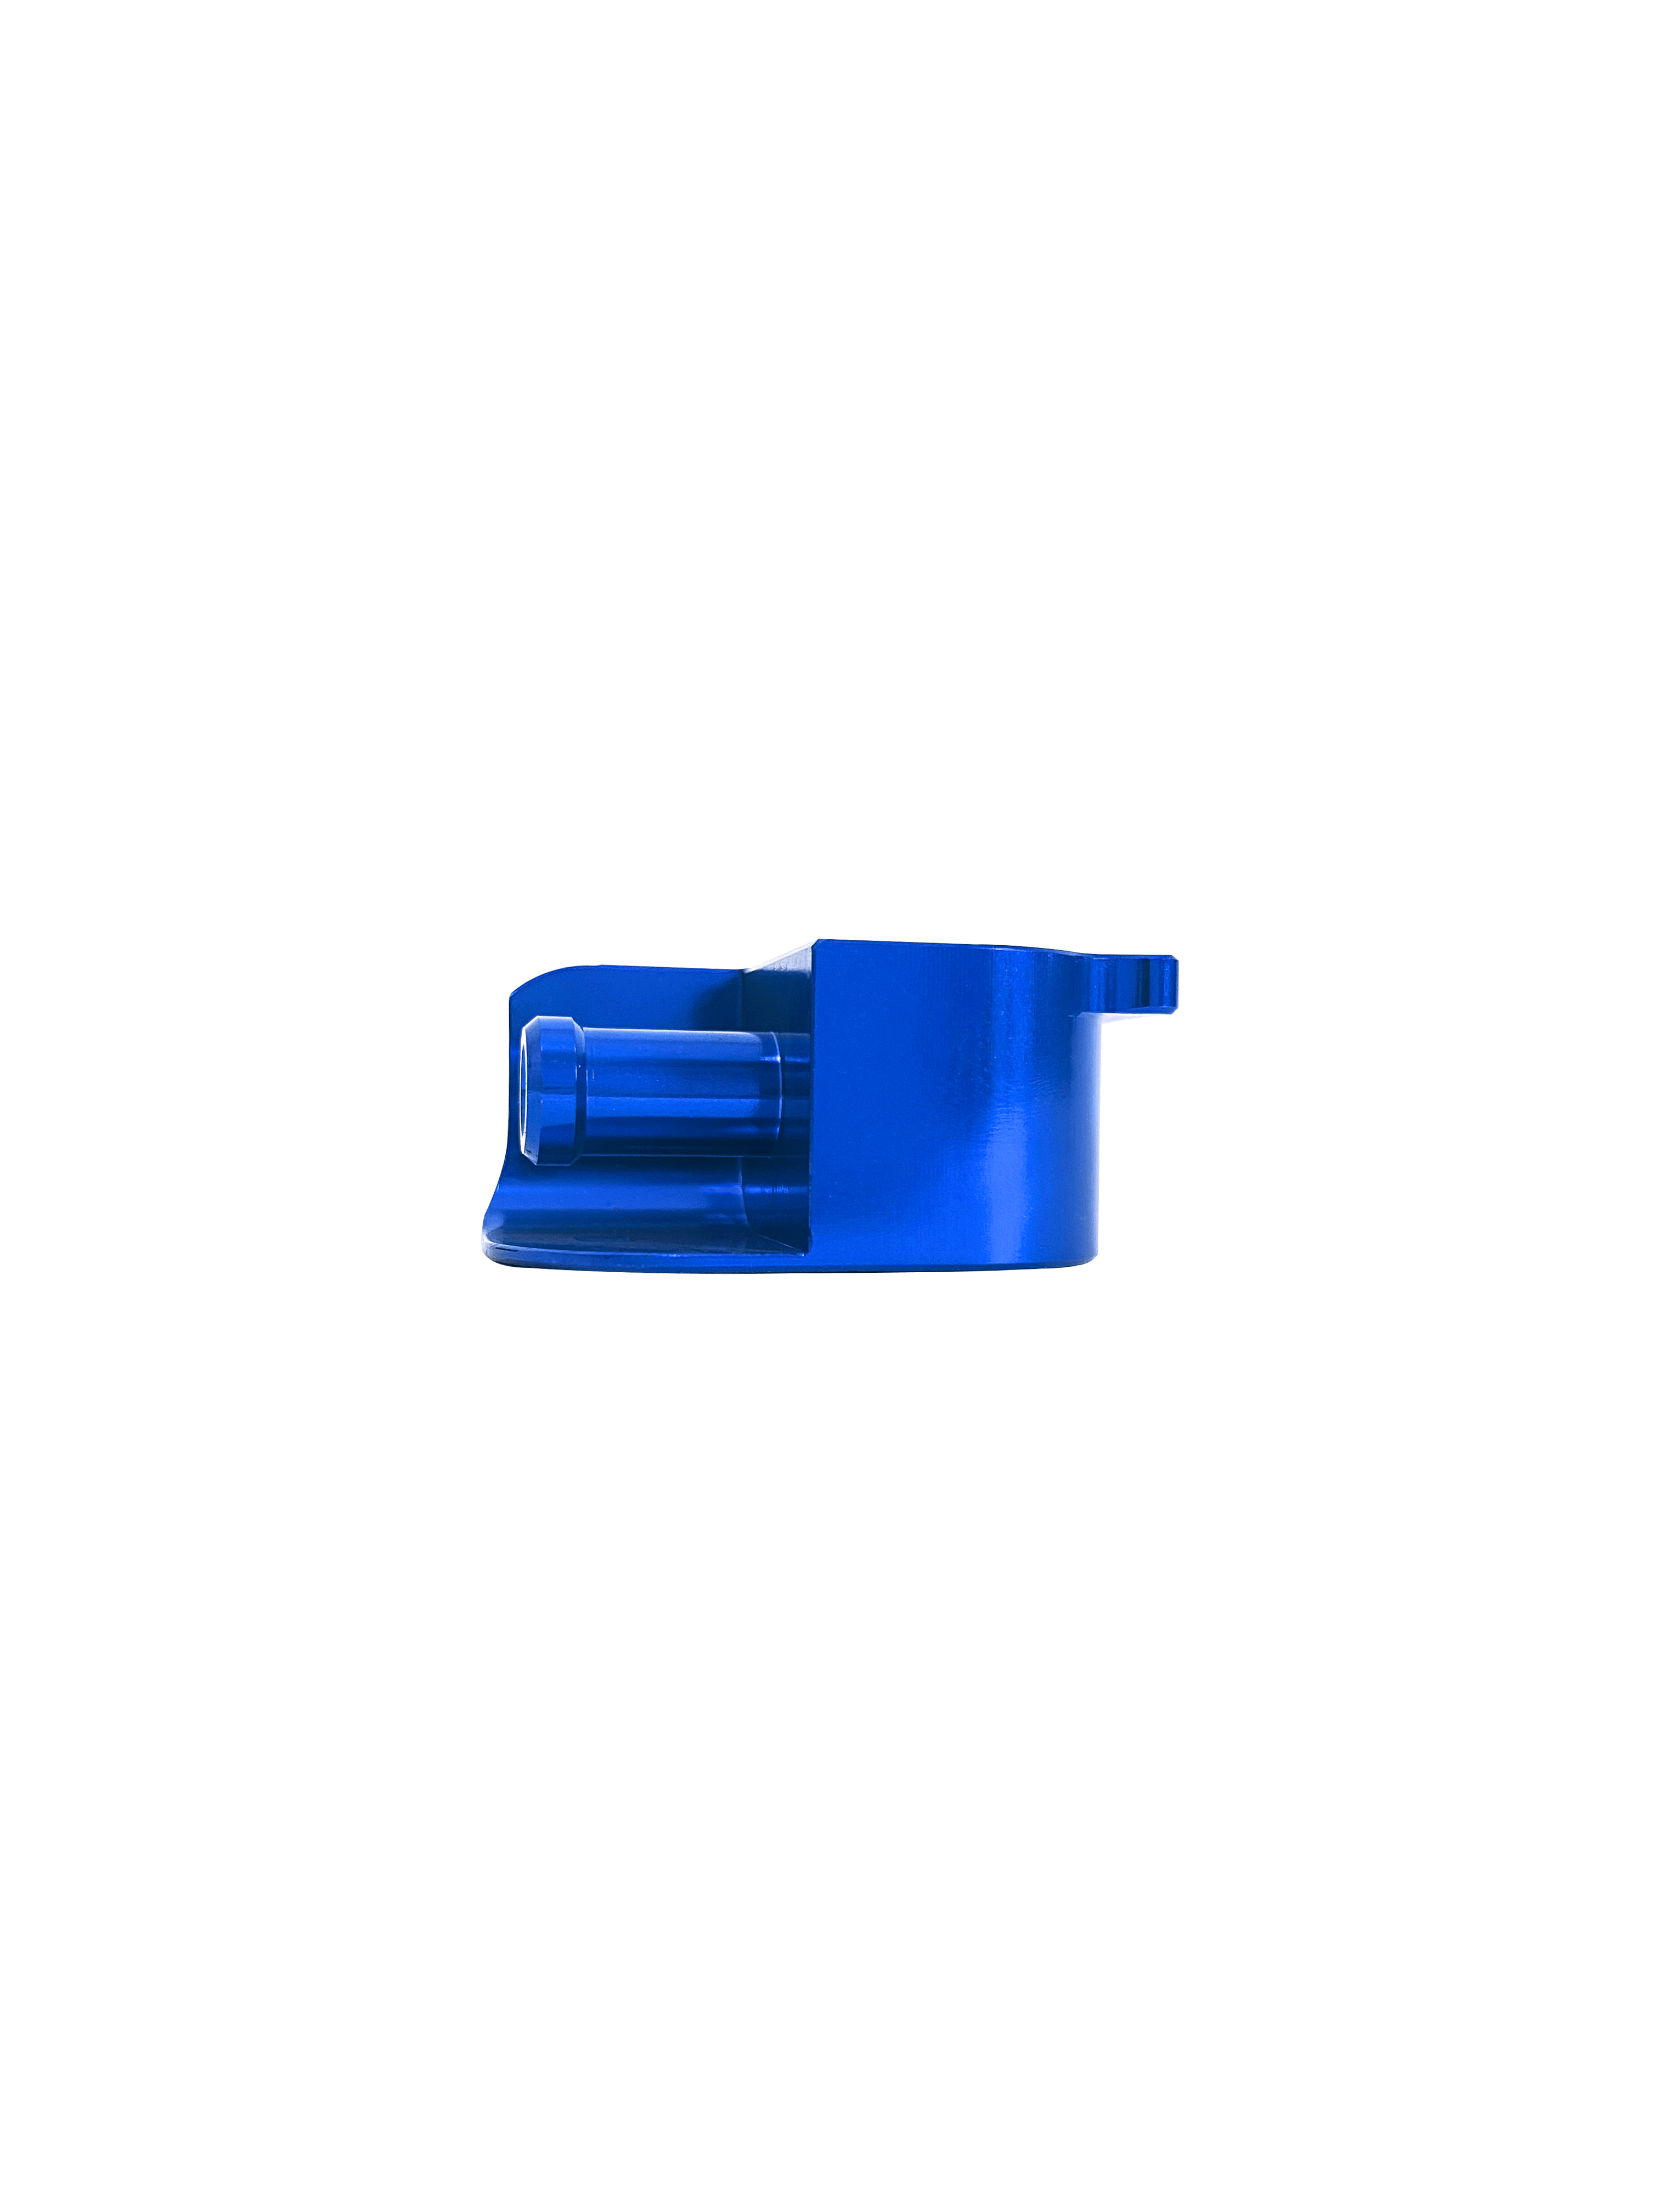 Conector De Combustible 2T TPI – BMS Husqvarna – Azul